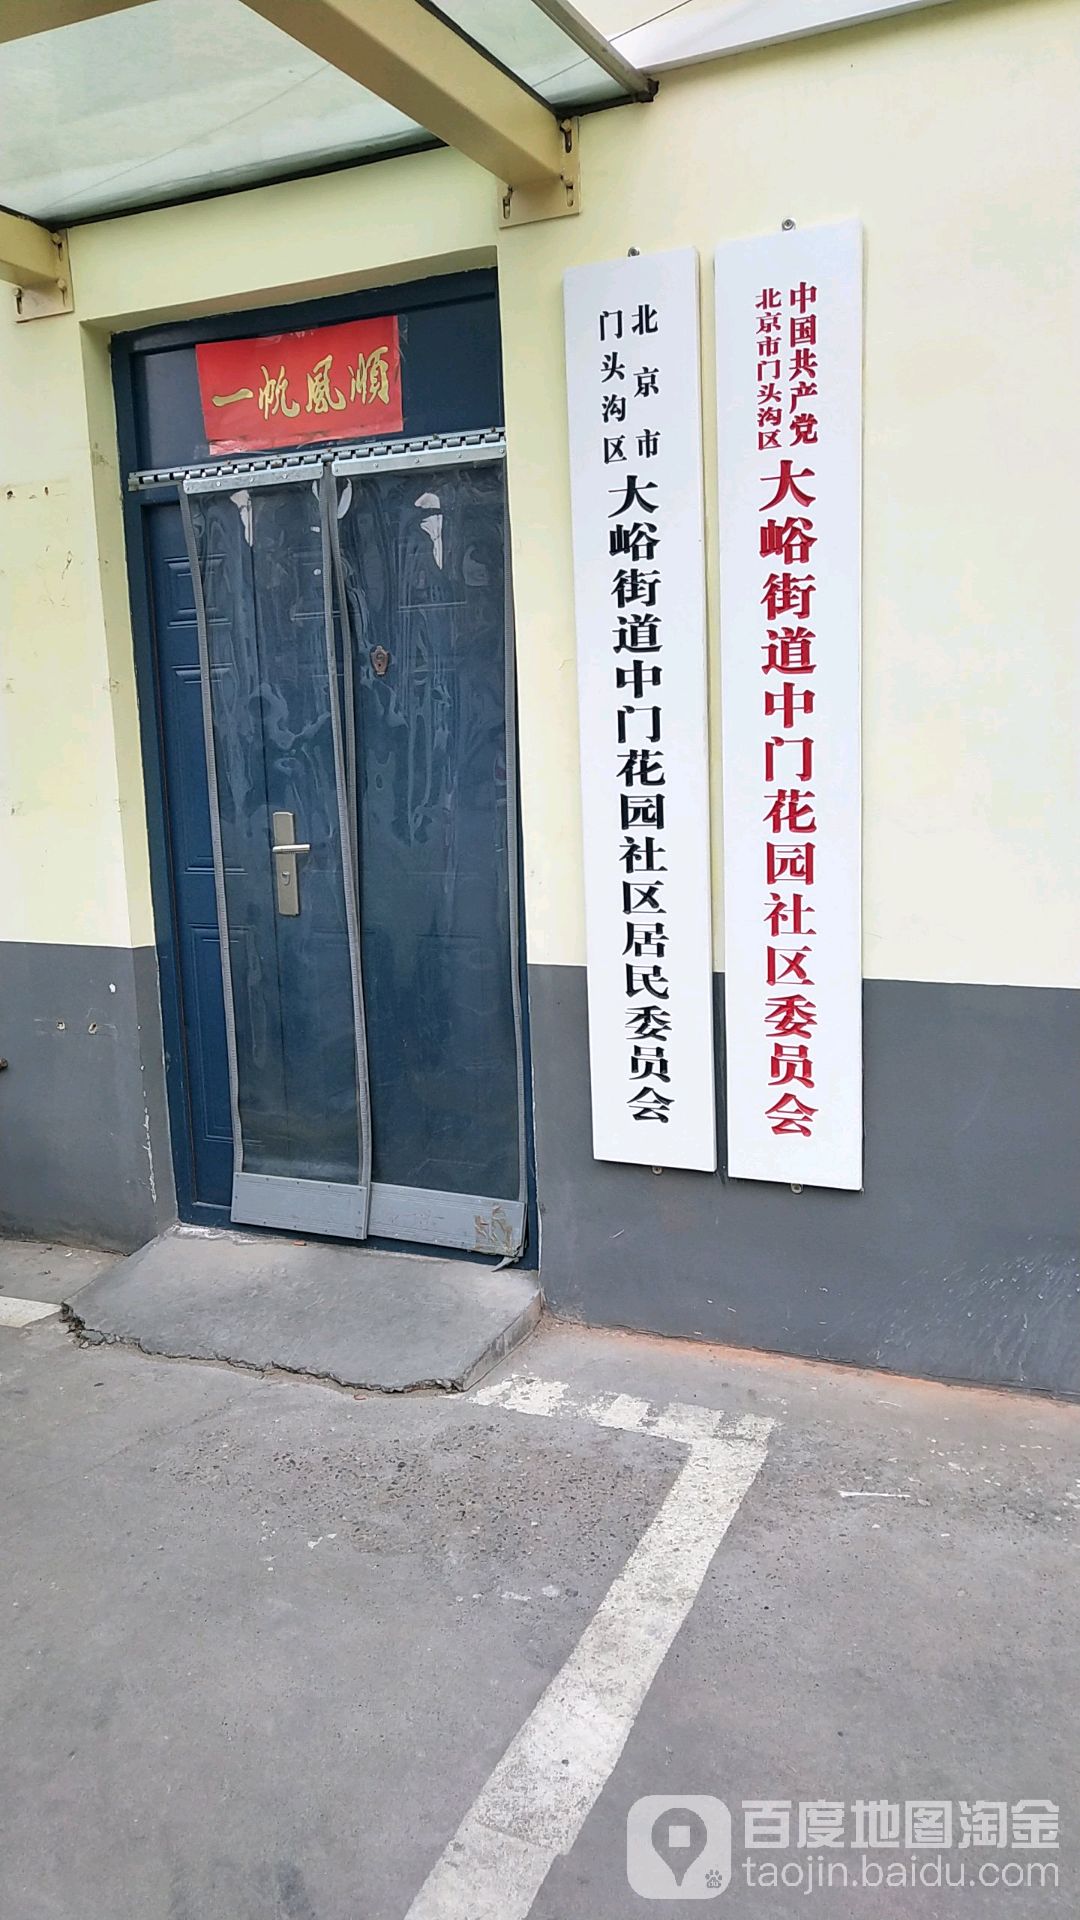 >> 生活服务地址(位置,怎么去,怎么走):  北京市门头沟区大峪街道大峪